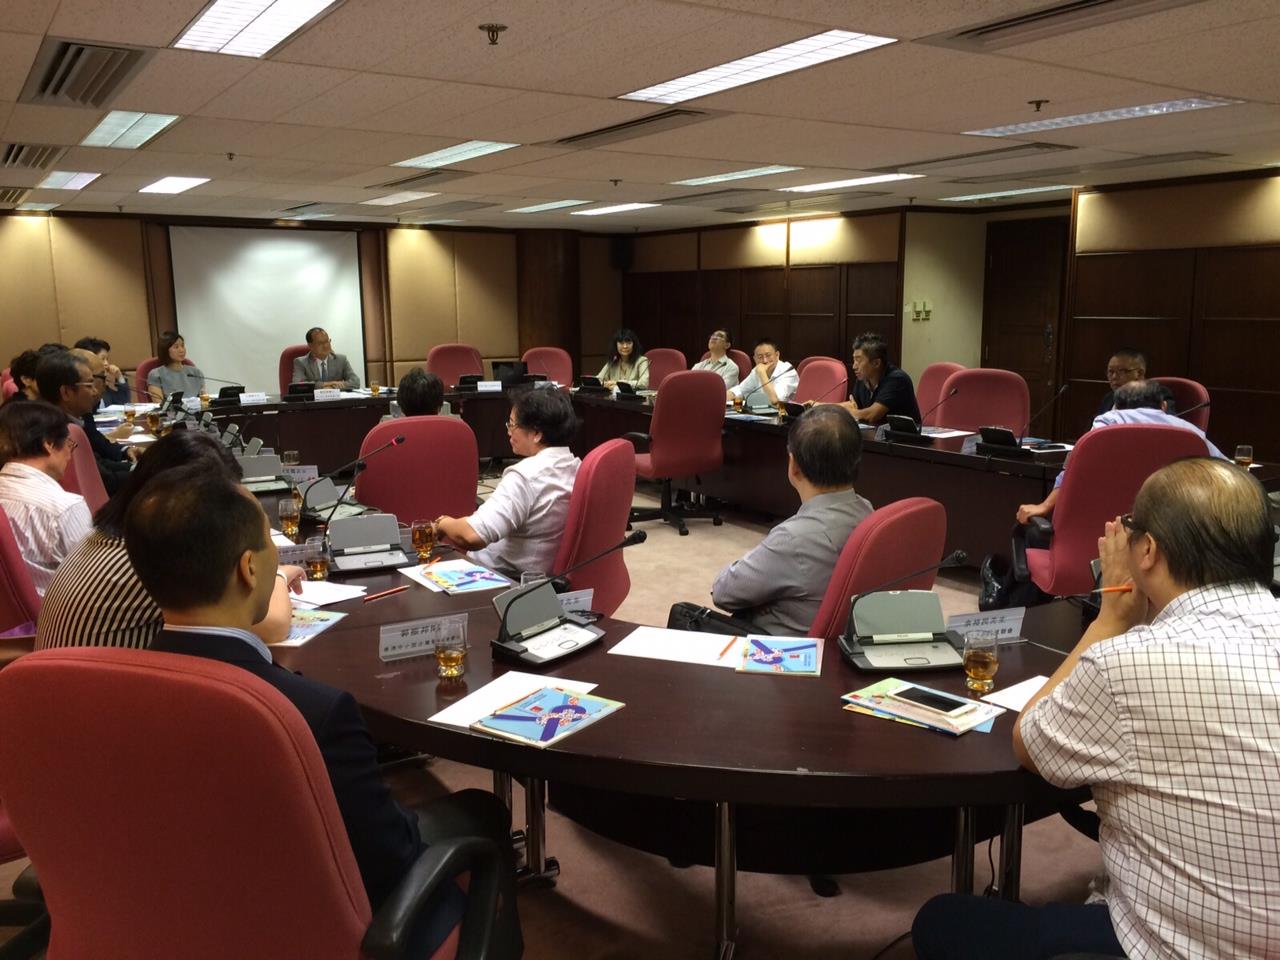 图   片   13 : 中   小   型   企   业   委   员   会   于   2015 年   7 月   16 日   与   中   小   企   业   组   织   代   表   会   面   ，   就   「   香   港   中   小   企   业   在   发   展   电   子   商   贸   及   资   讯   科   技   在   应   用   上   所   需   的   支   援   」   交   流   意   见   。    中   小   型   企   业   委   员   会   其   后   把   会   面   的   意   见   撮   要   提   交   与   政   府   有   关   部   门   参   考   。   